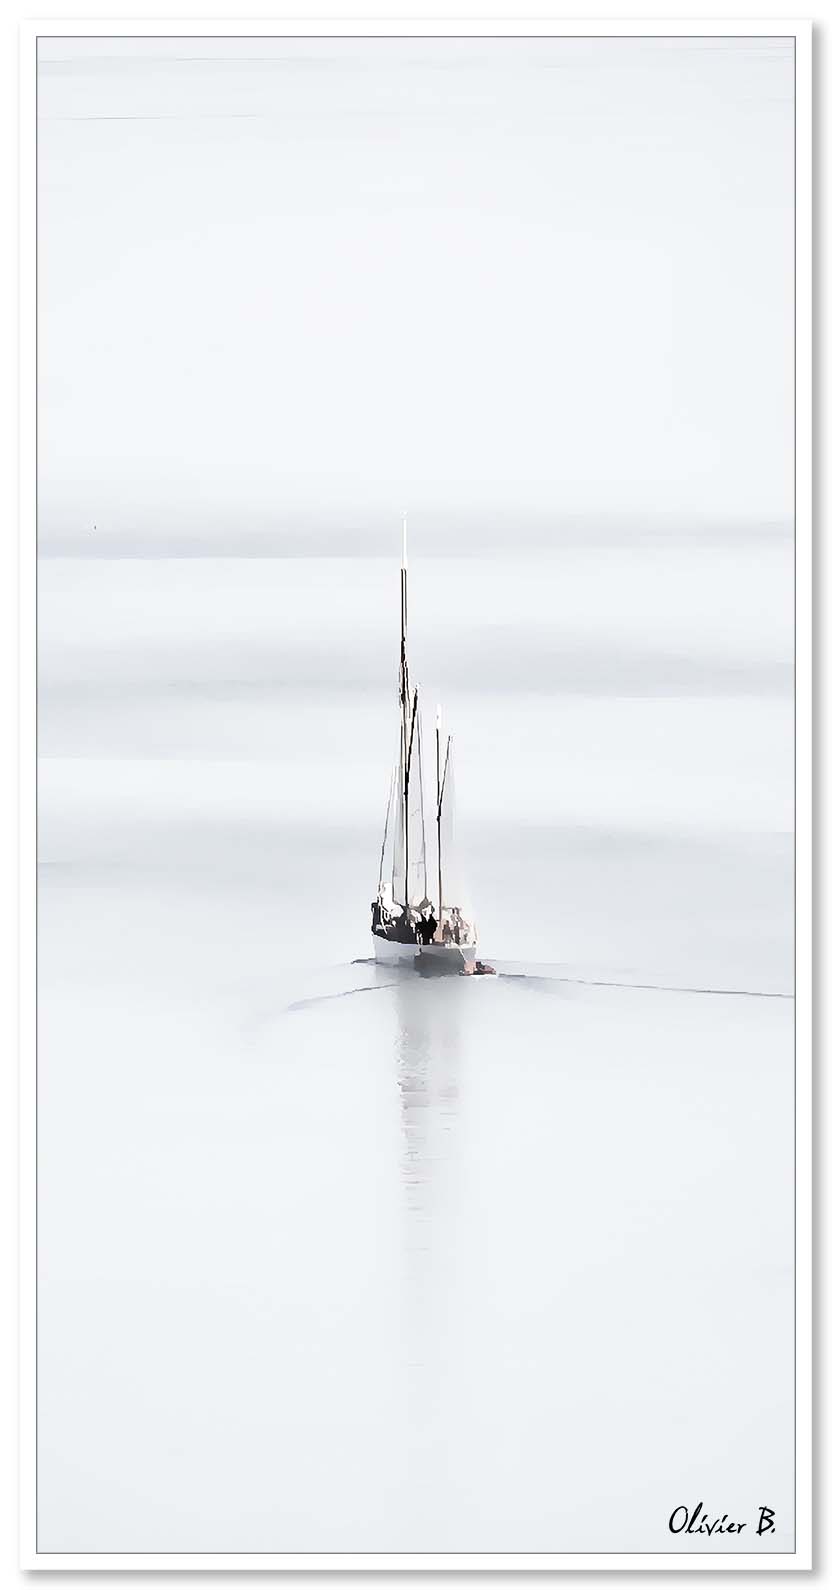 Un voilier évoque un songe, glissant doucement sur les douces vagues, son reflet s'étirant à l'horizon